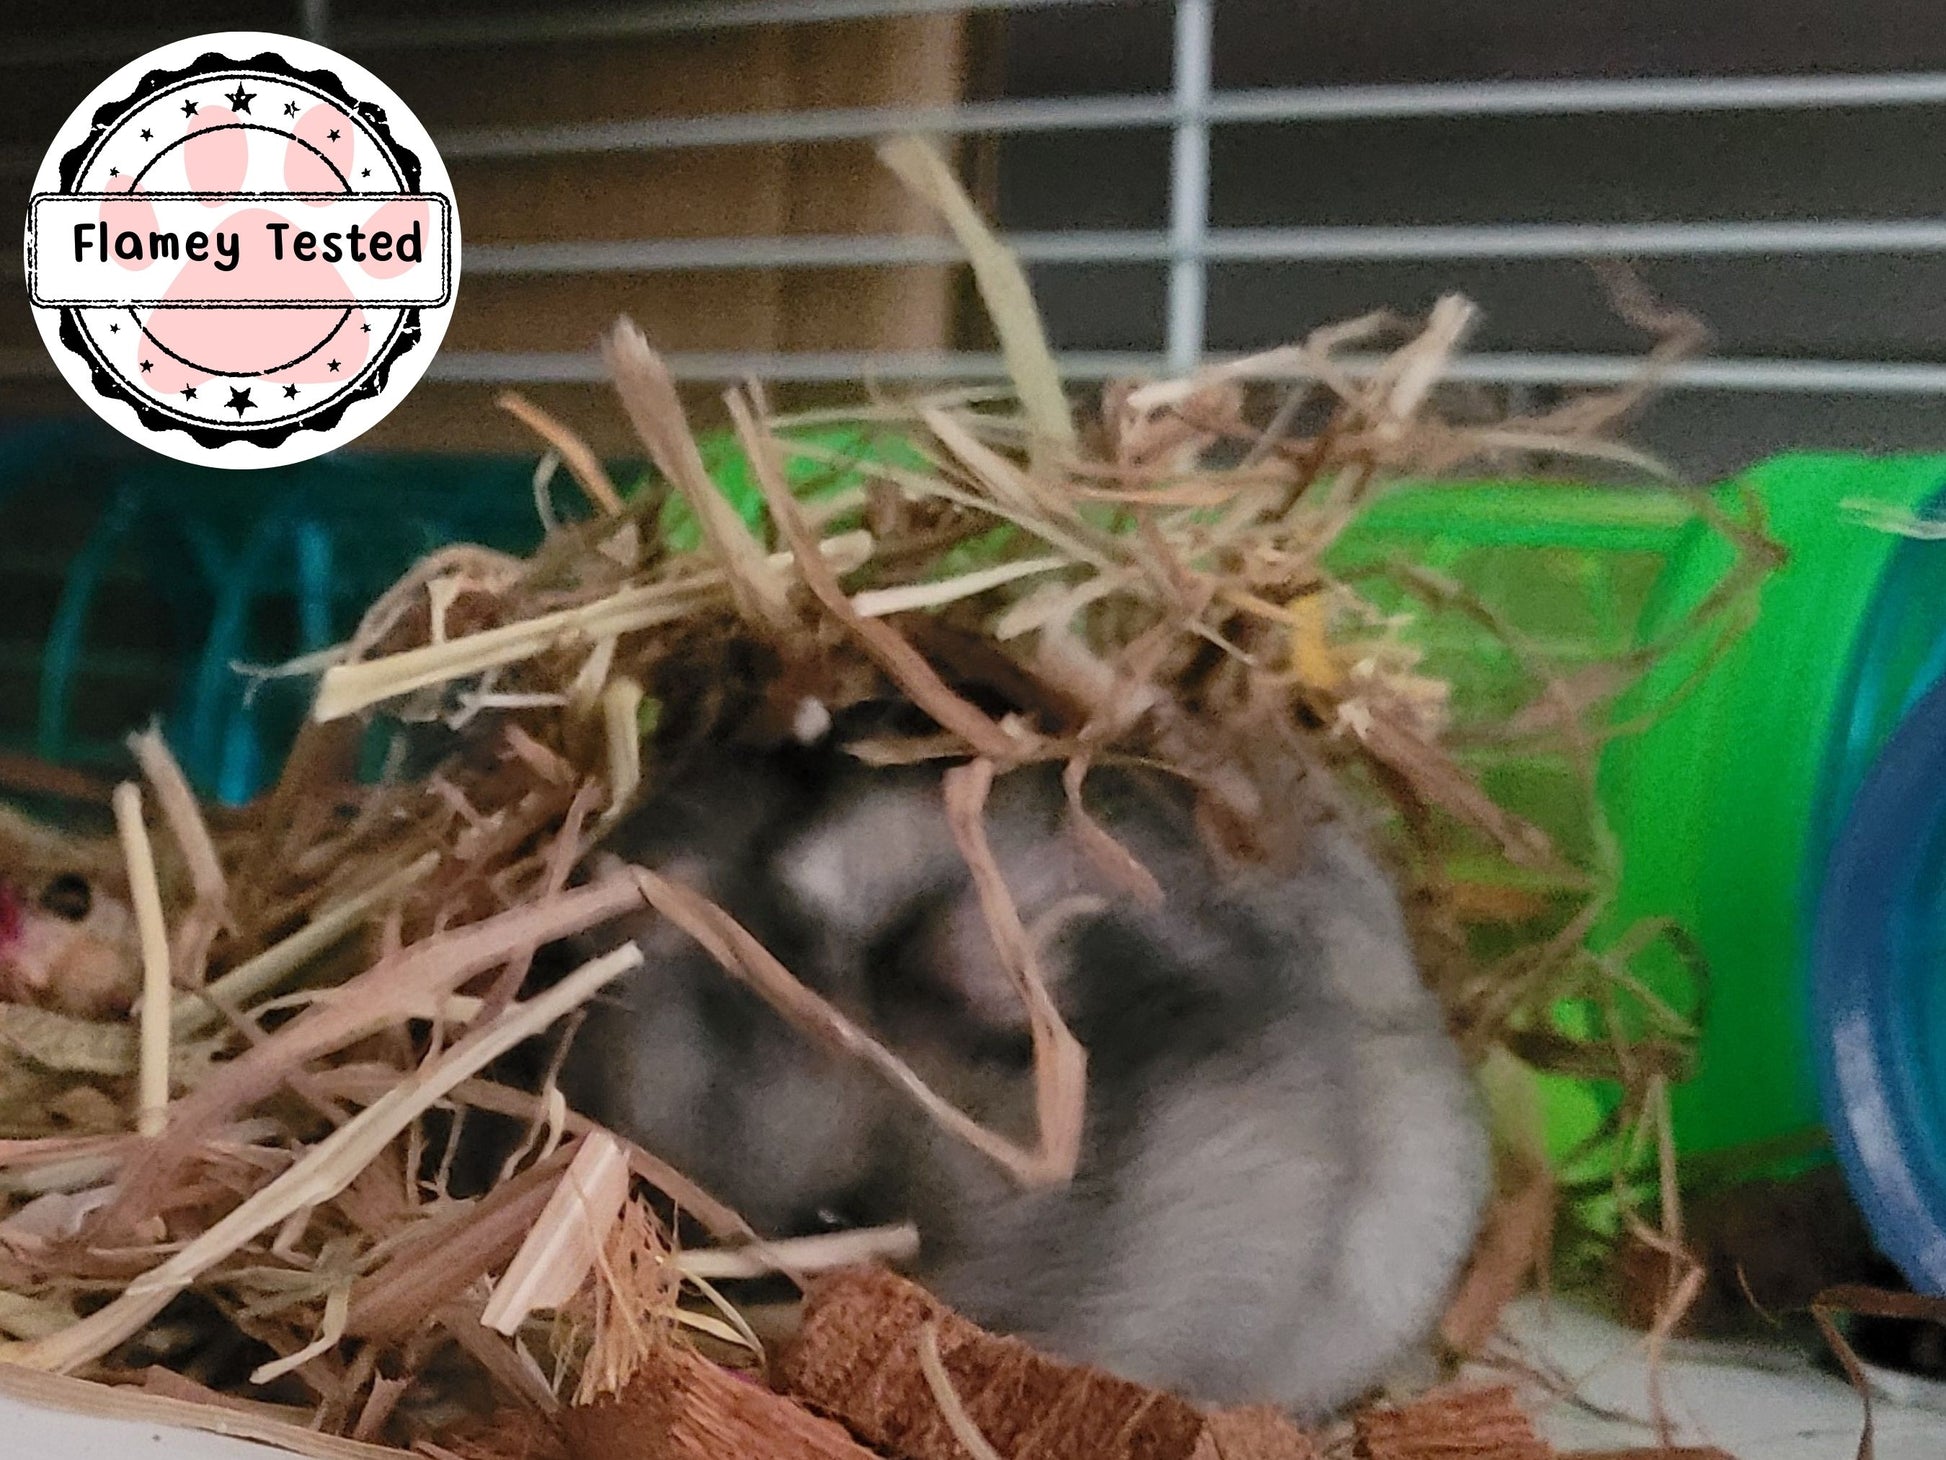 A hamster foraging in feeding hay